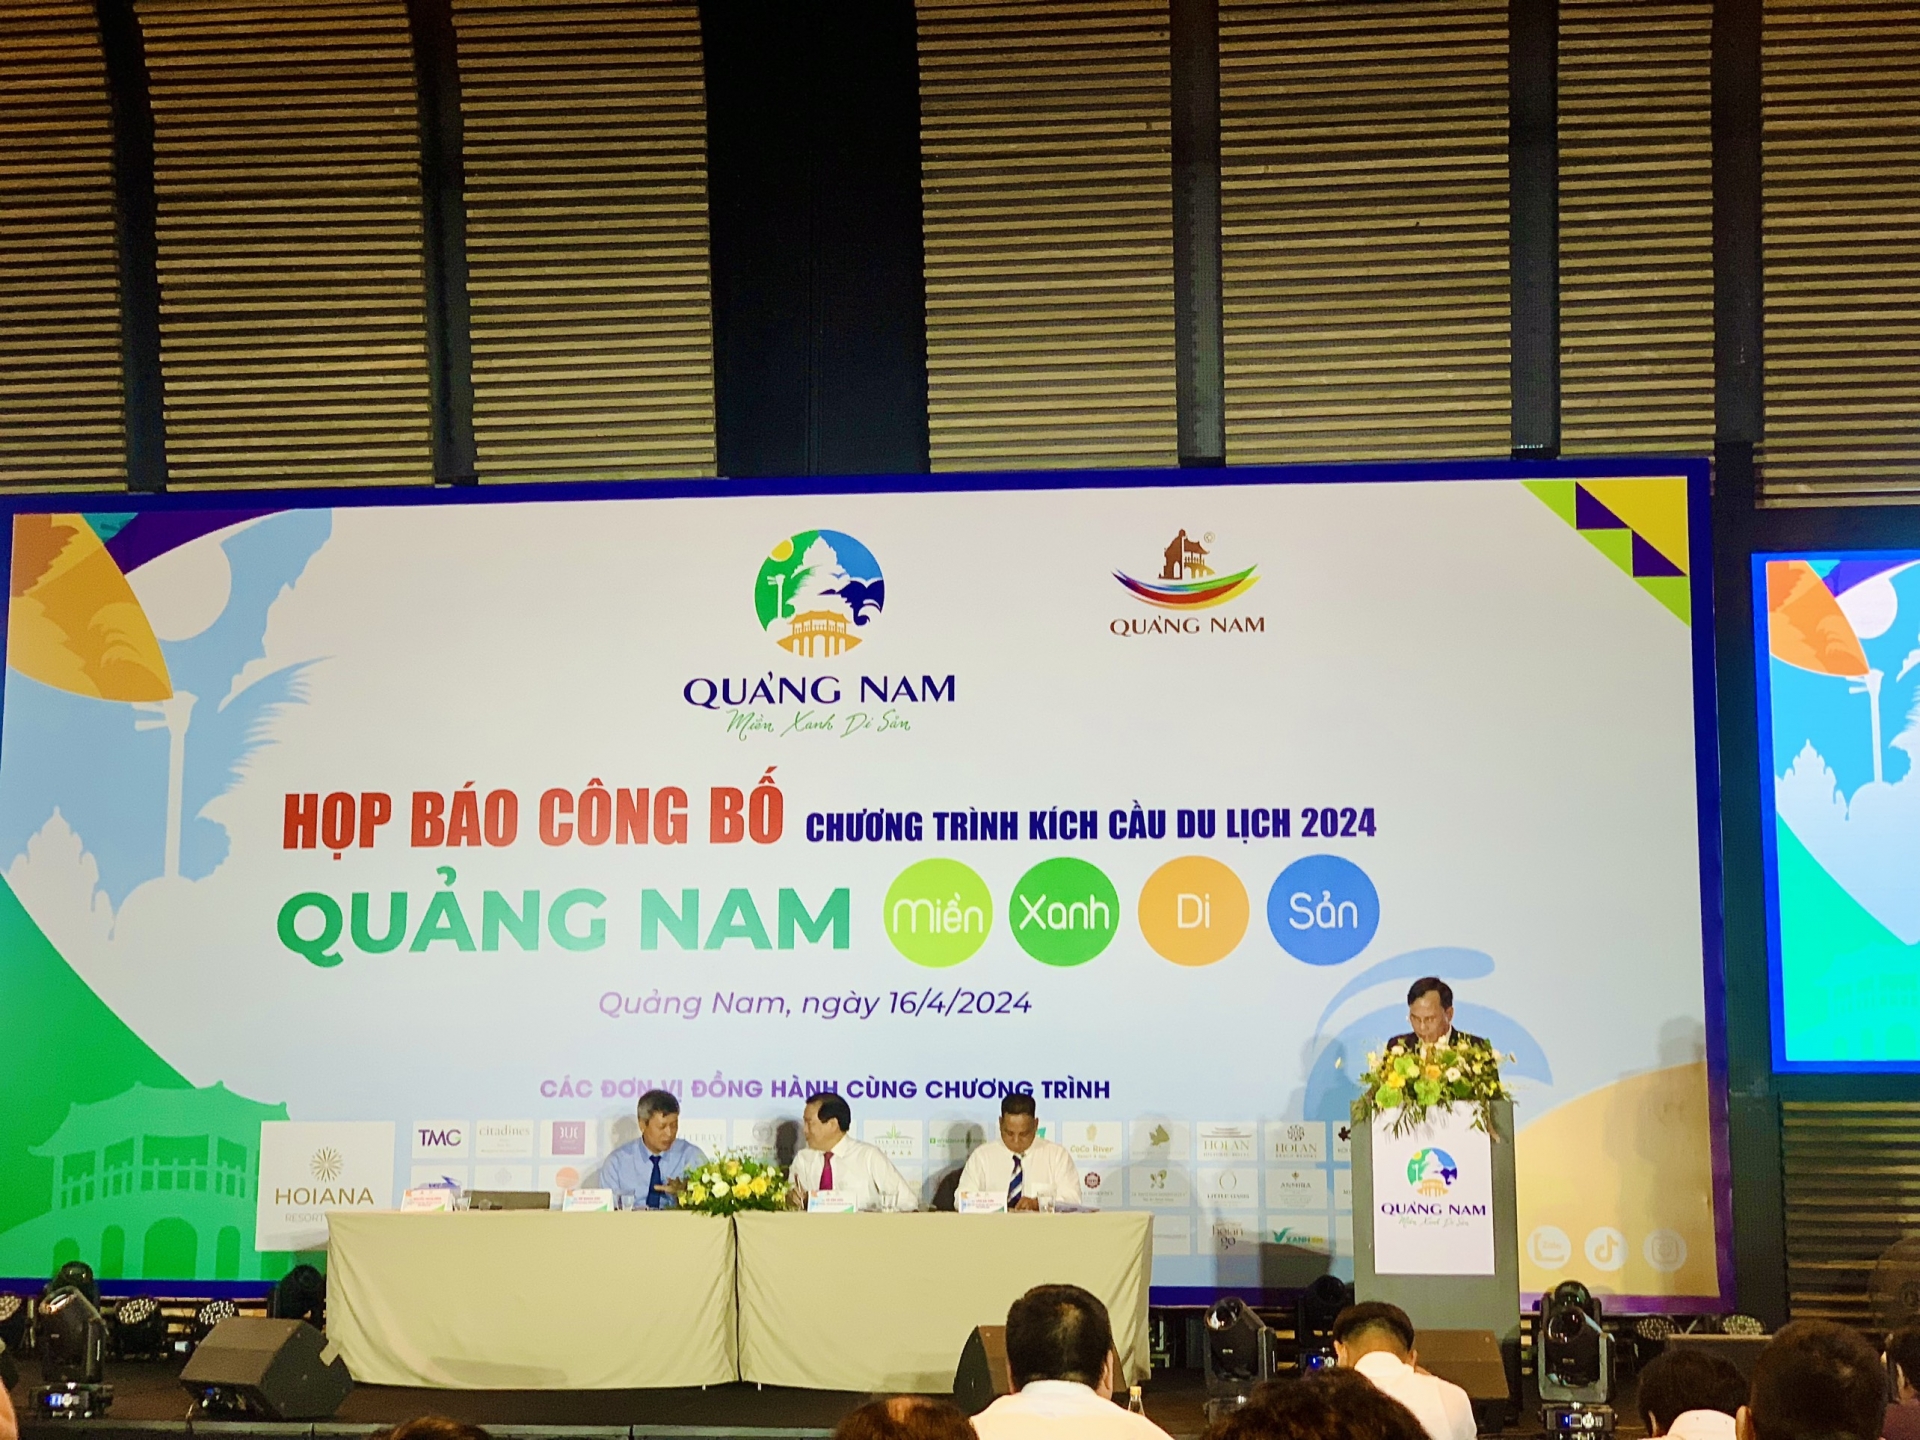 Du lịch Quảng Nam 2024: Nhiều ưu đãi và trải nghiệm thú vị, mới mẻ cho du Khách